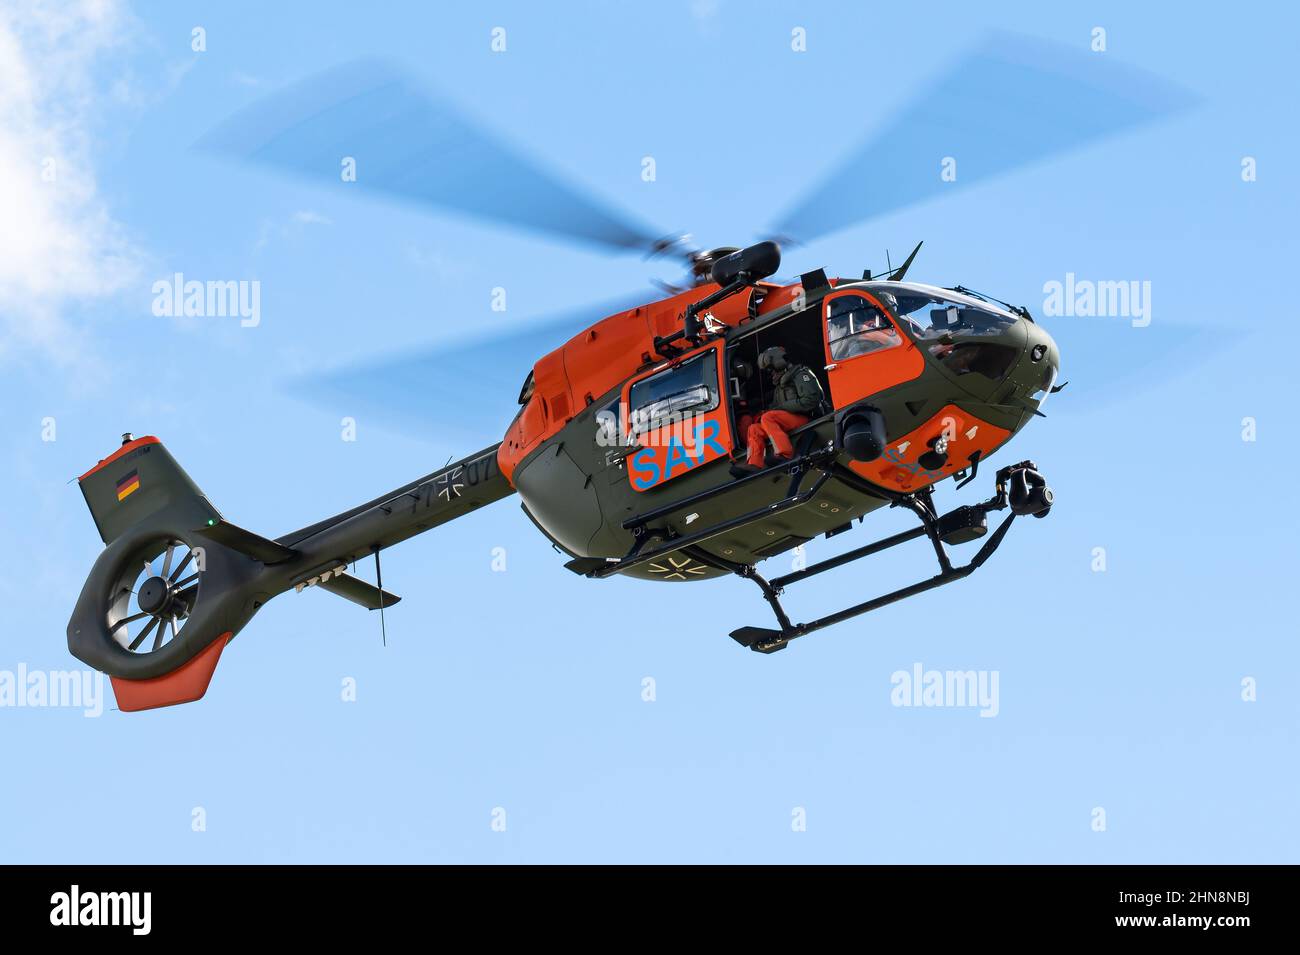 Un hélicoptère de recherche et de sauvetage Airbus H145M du corps d'aviation de l'armée allemande. Banque D'Images